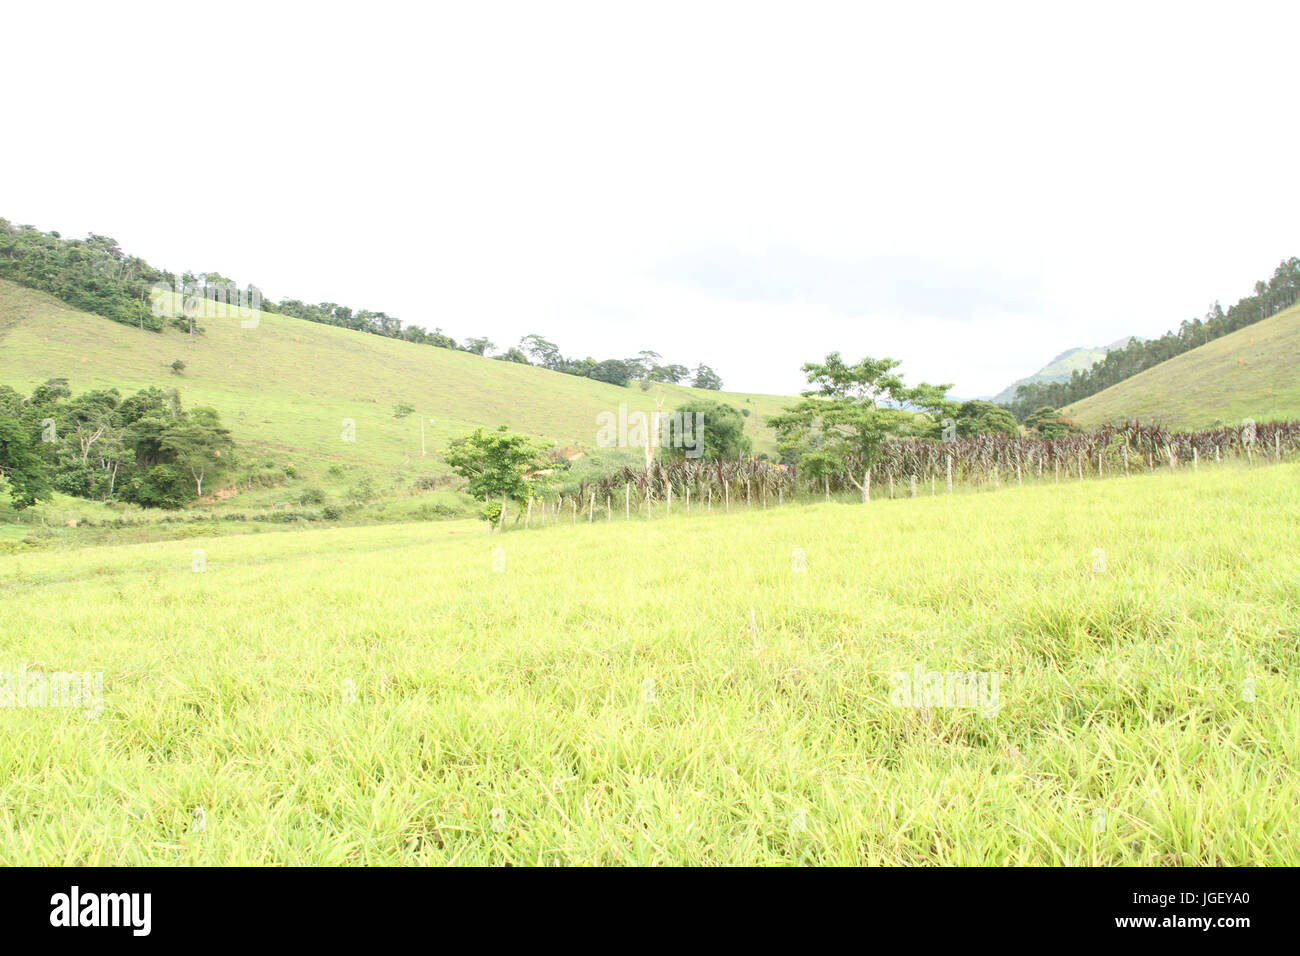 Landscape, farm, 2016, Merces, Minas Gerais, Brazil. Stock Photo